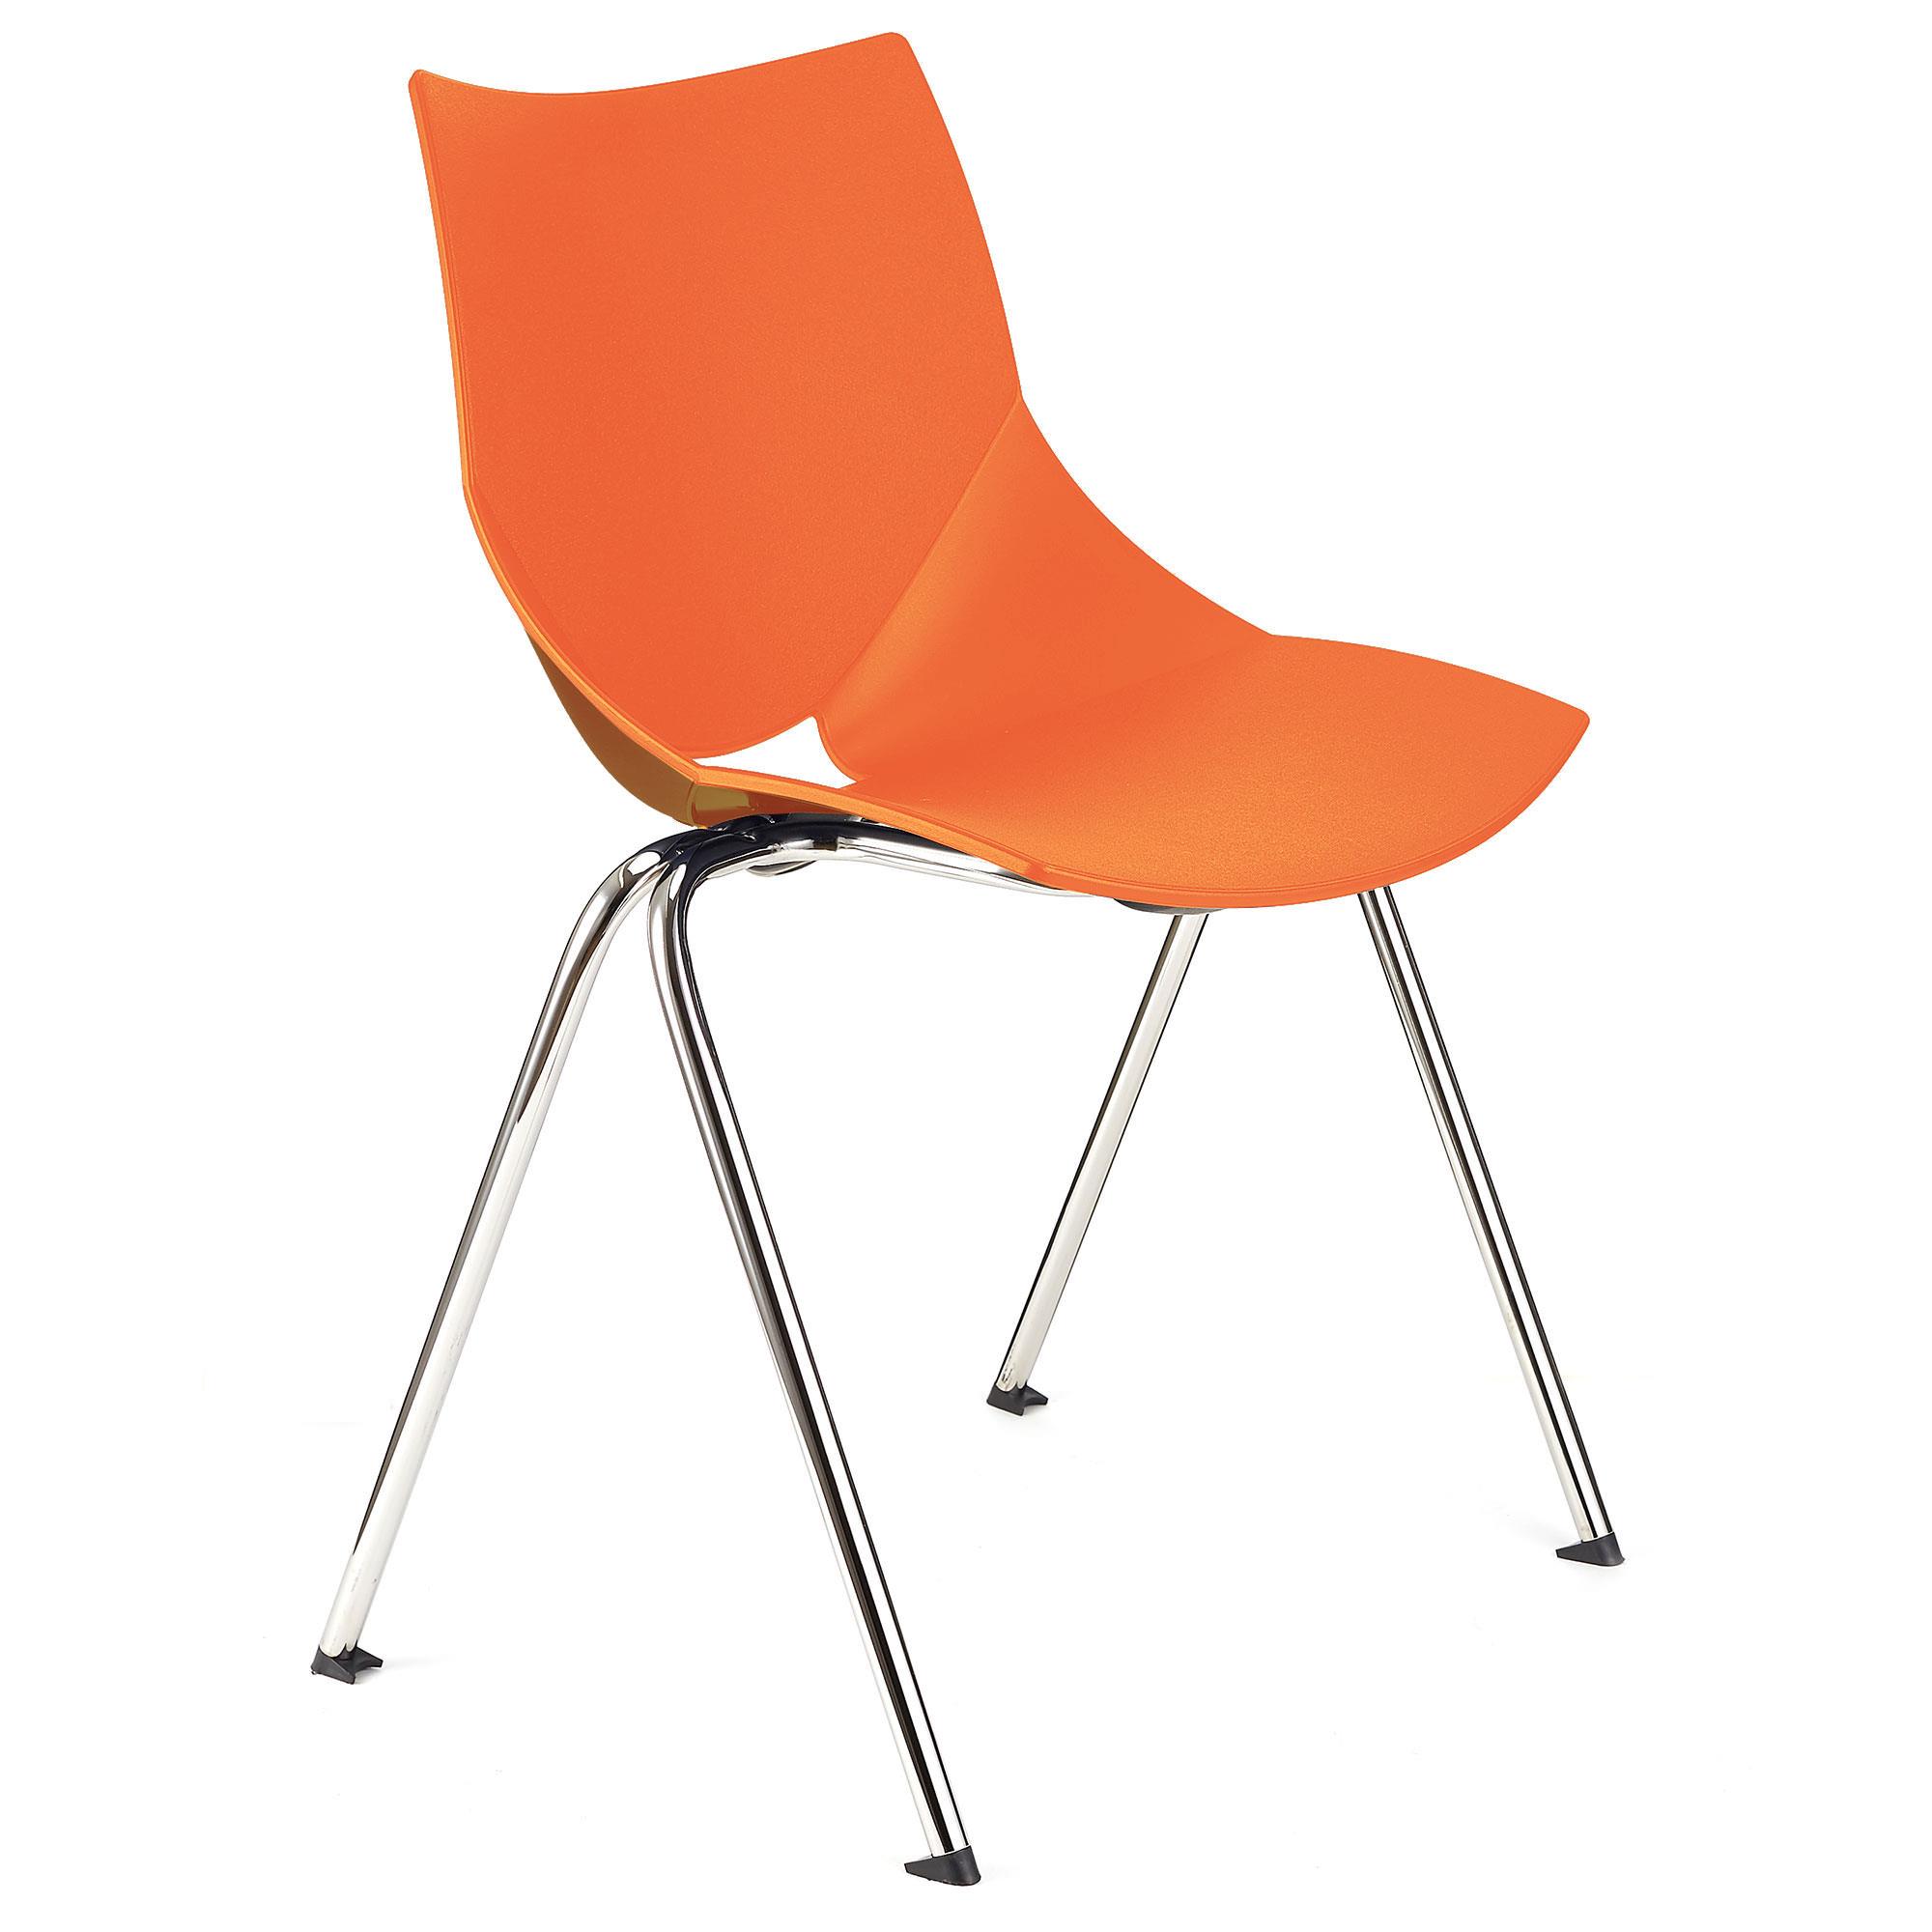 Konferenzstuhl AMIR, bequem und praktisch, stapelbar, Farbe Orange